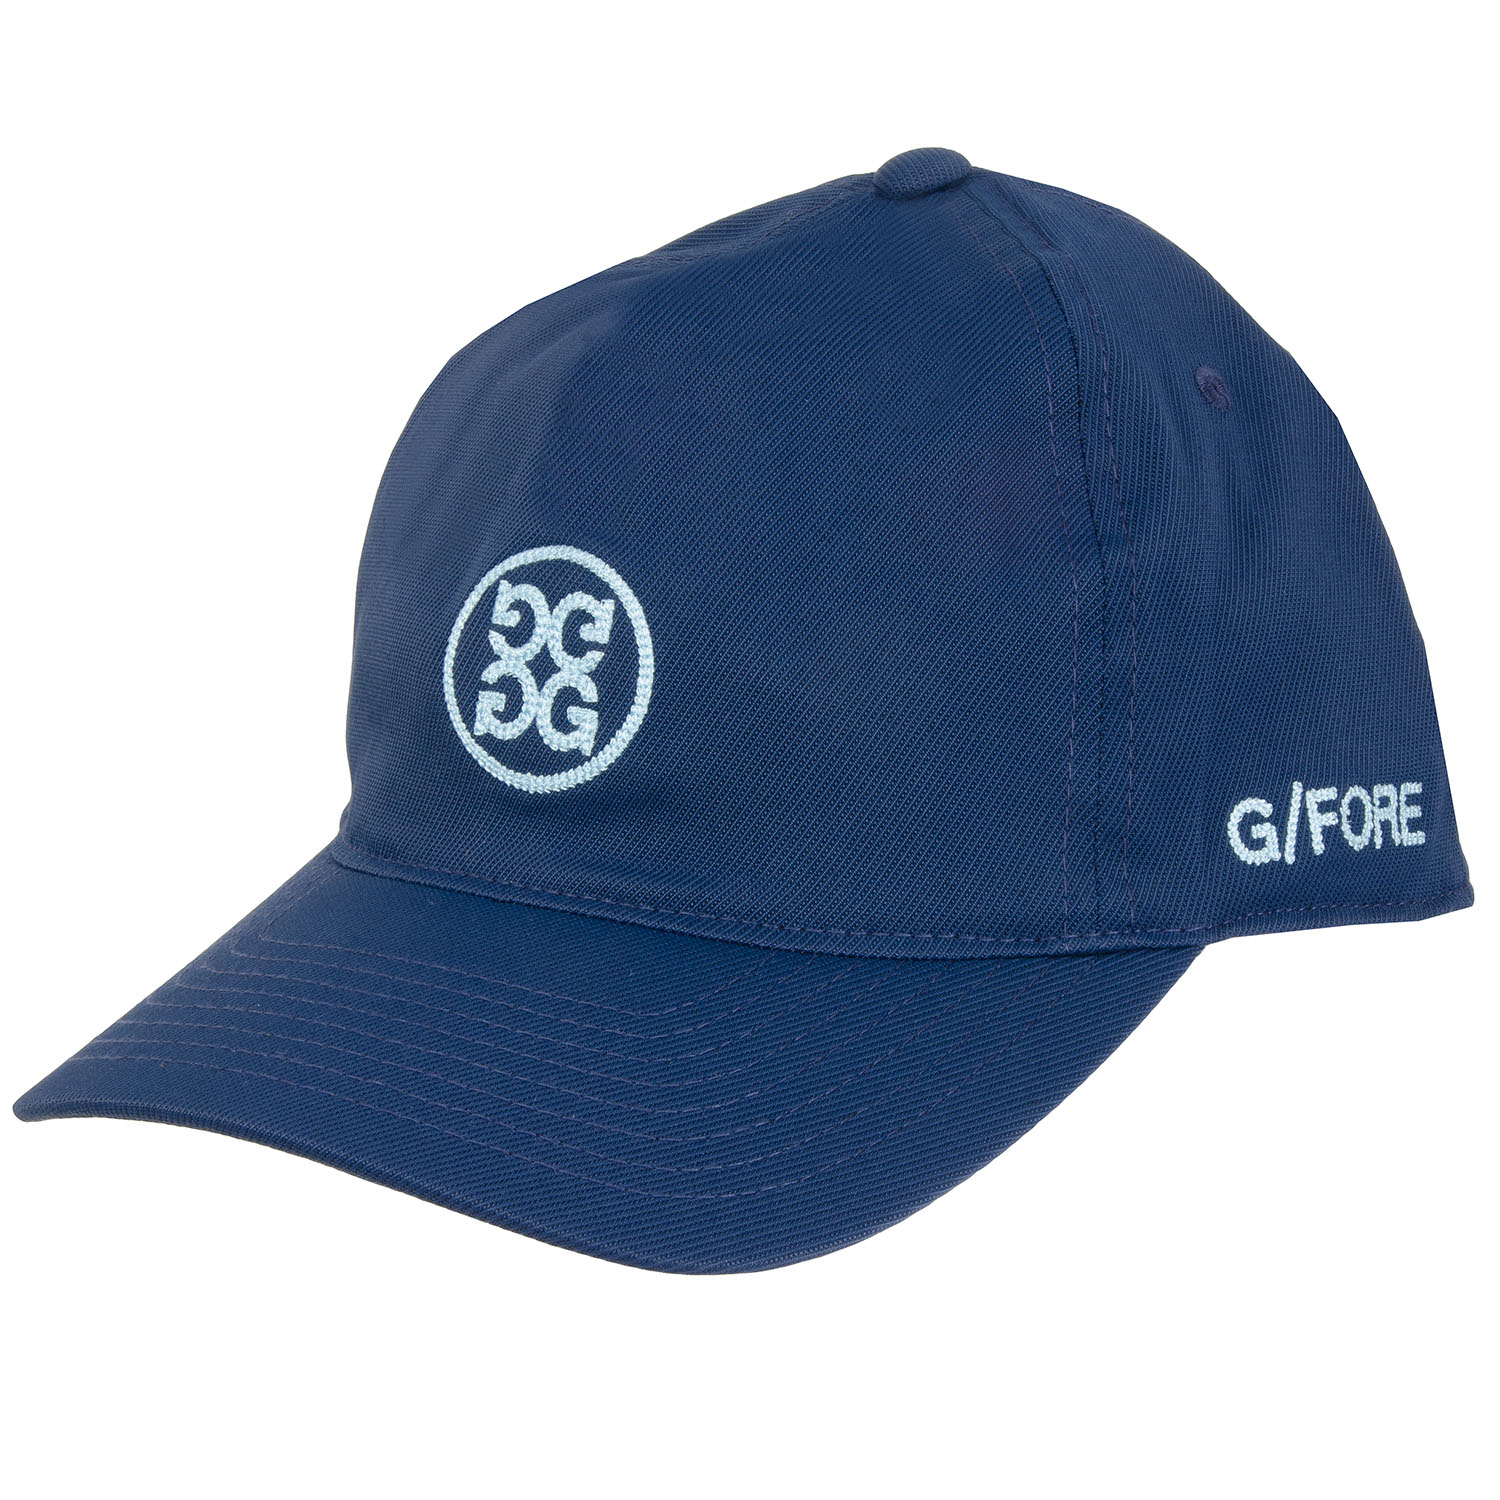 G/FORE X-Fit Small Circle G’S Snapback Baseball Cap